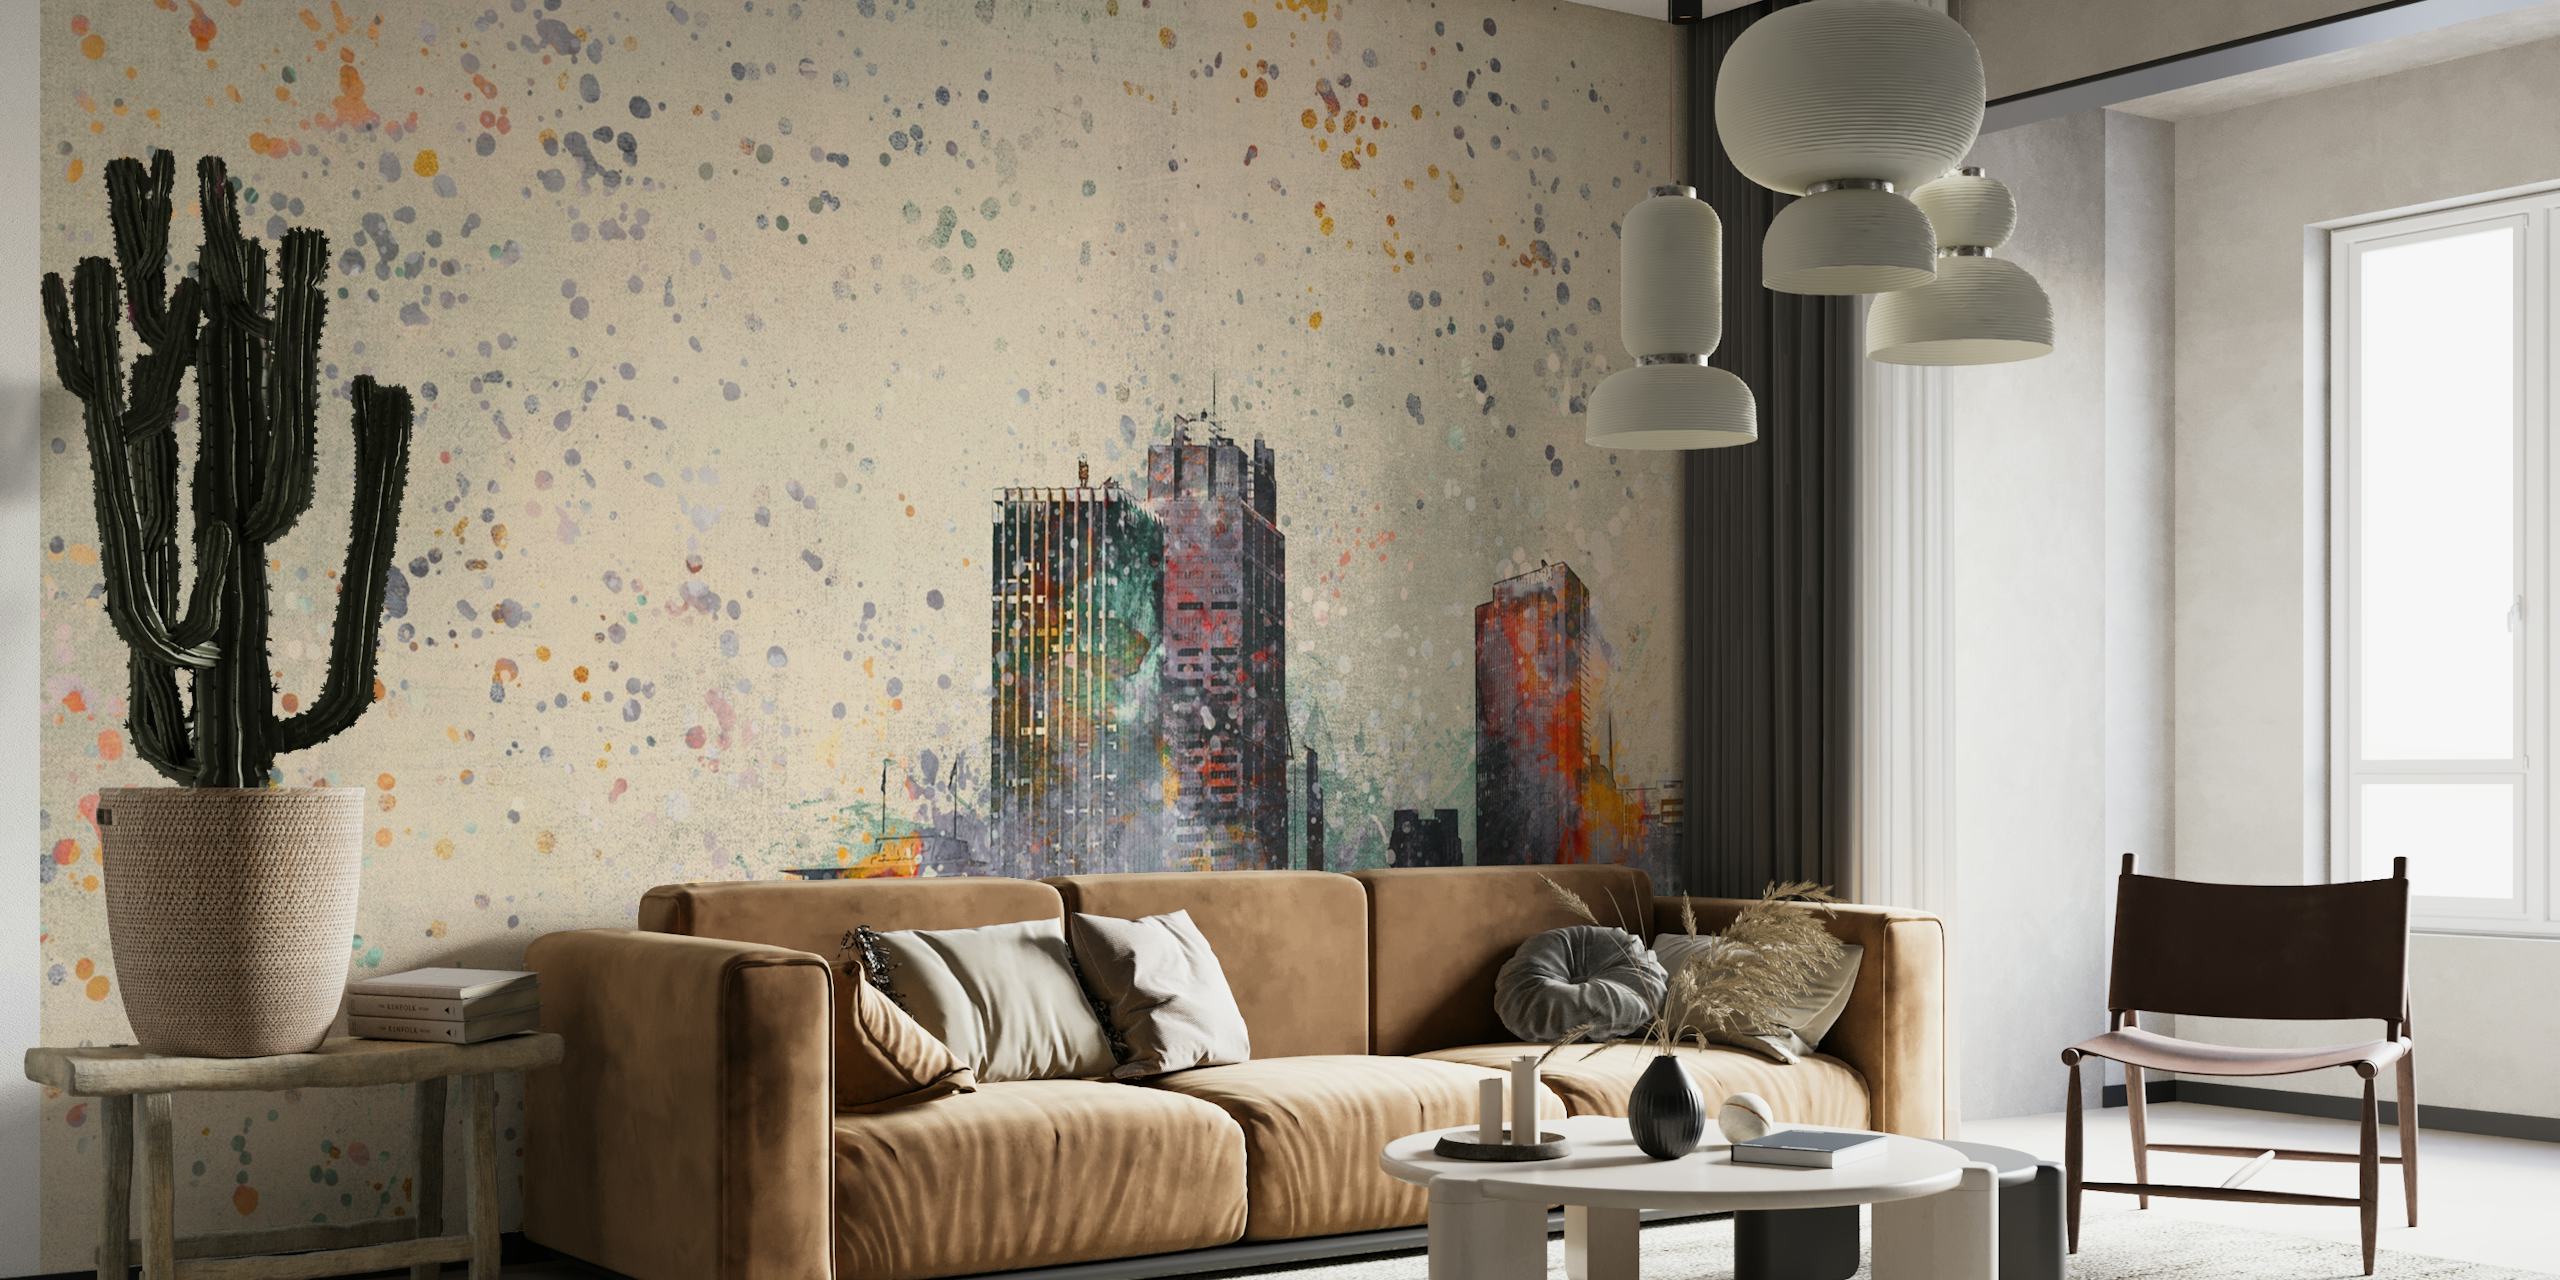 Zidna slika s apstraktnim gradskim pejzažom živih boja i efektom rasprskane boje